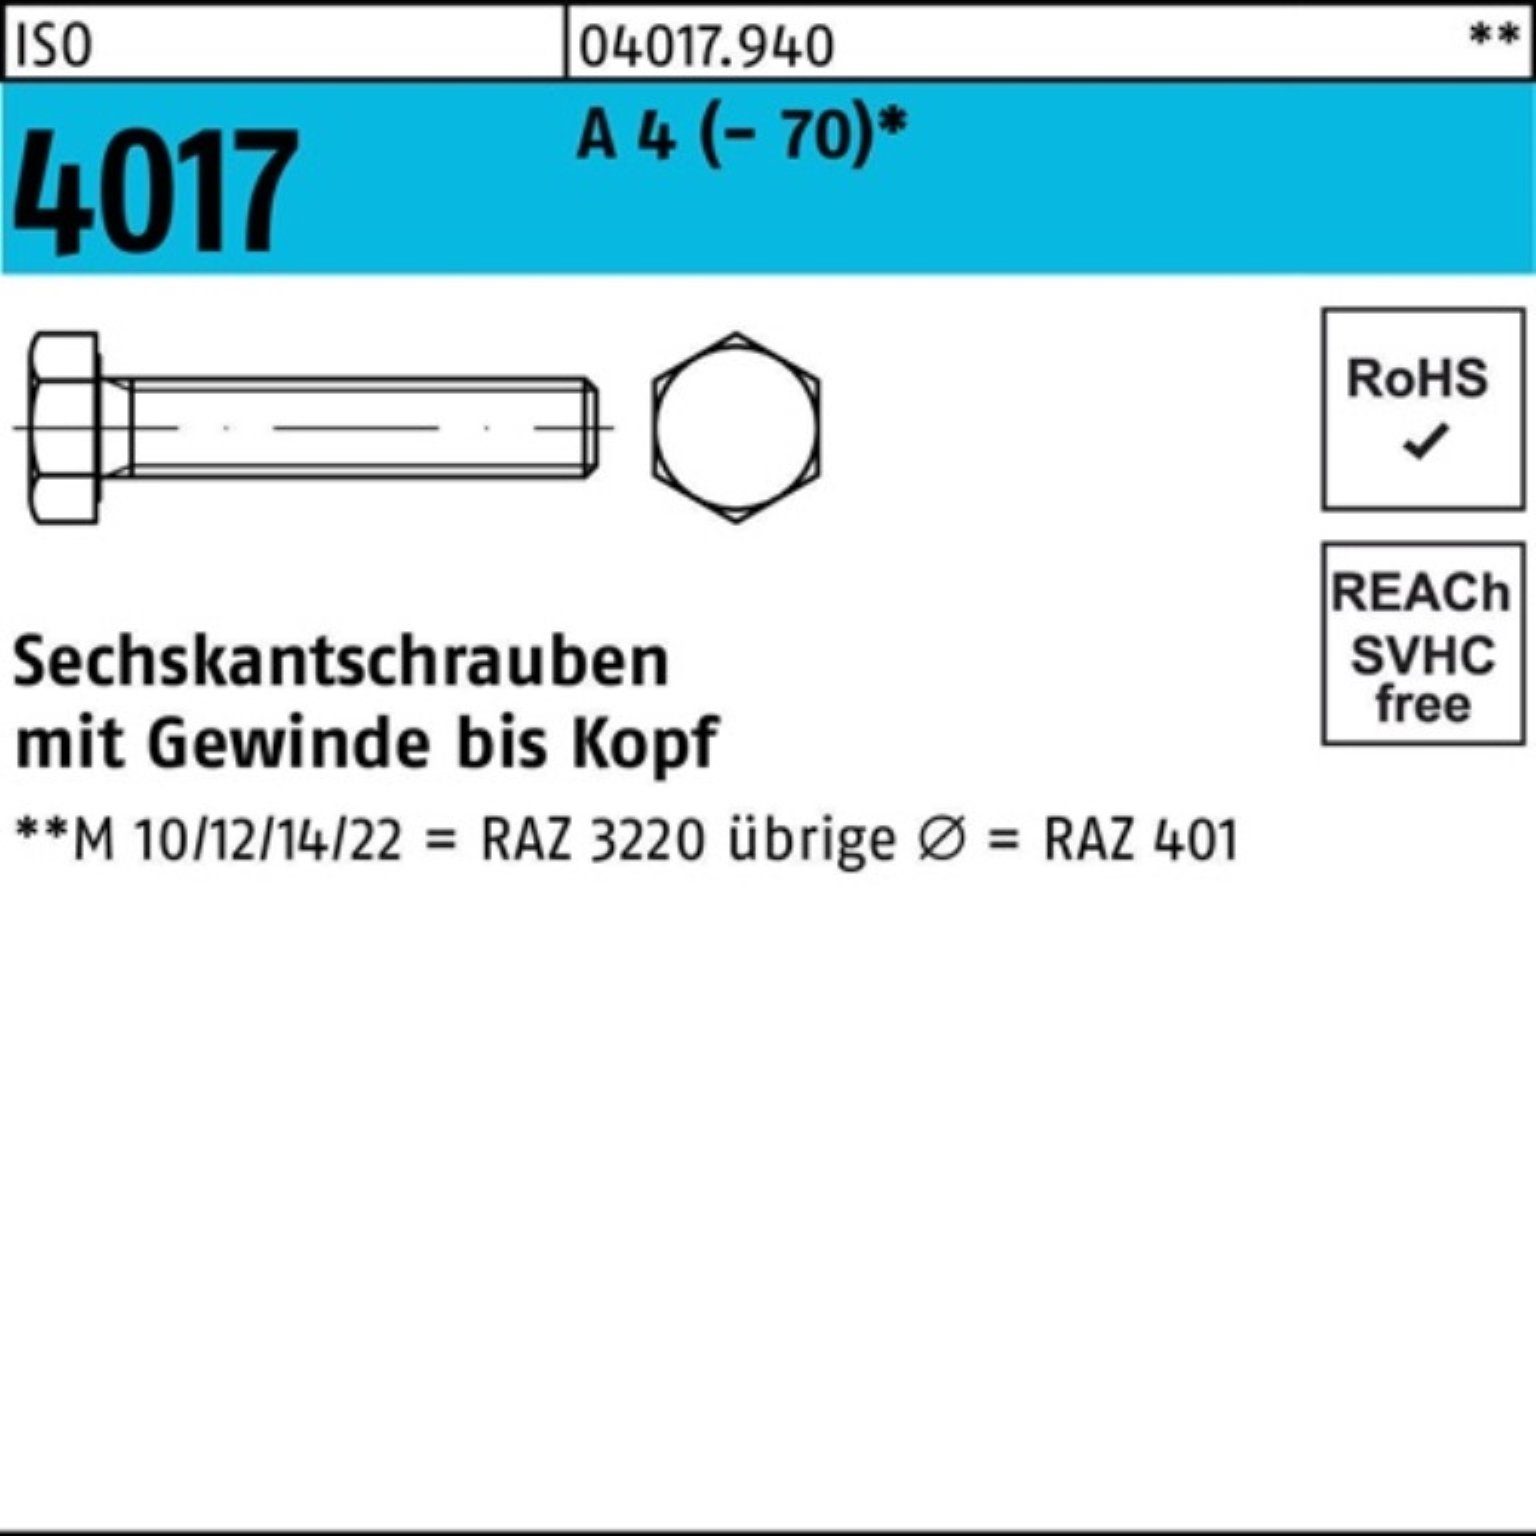 Bufab Sechskantschraube 100er Pack Sechskantschraube ISO 4017 VG M18x 55 A 4 (70) 1 Stück I